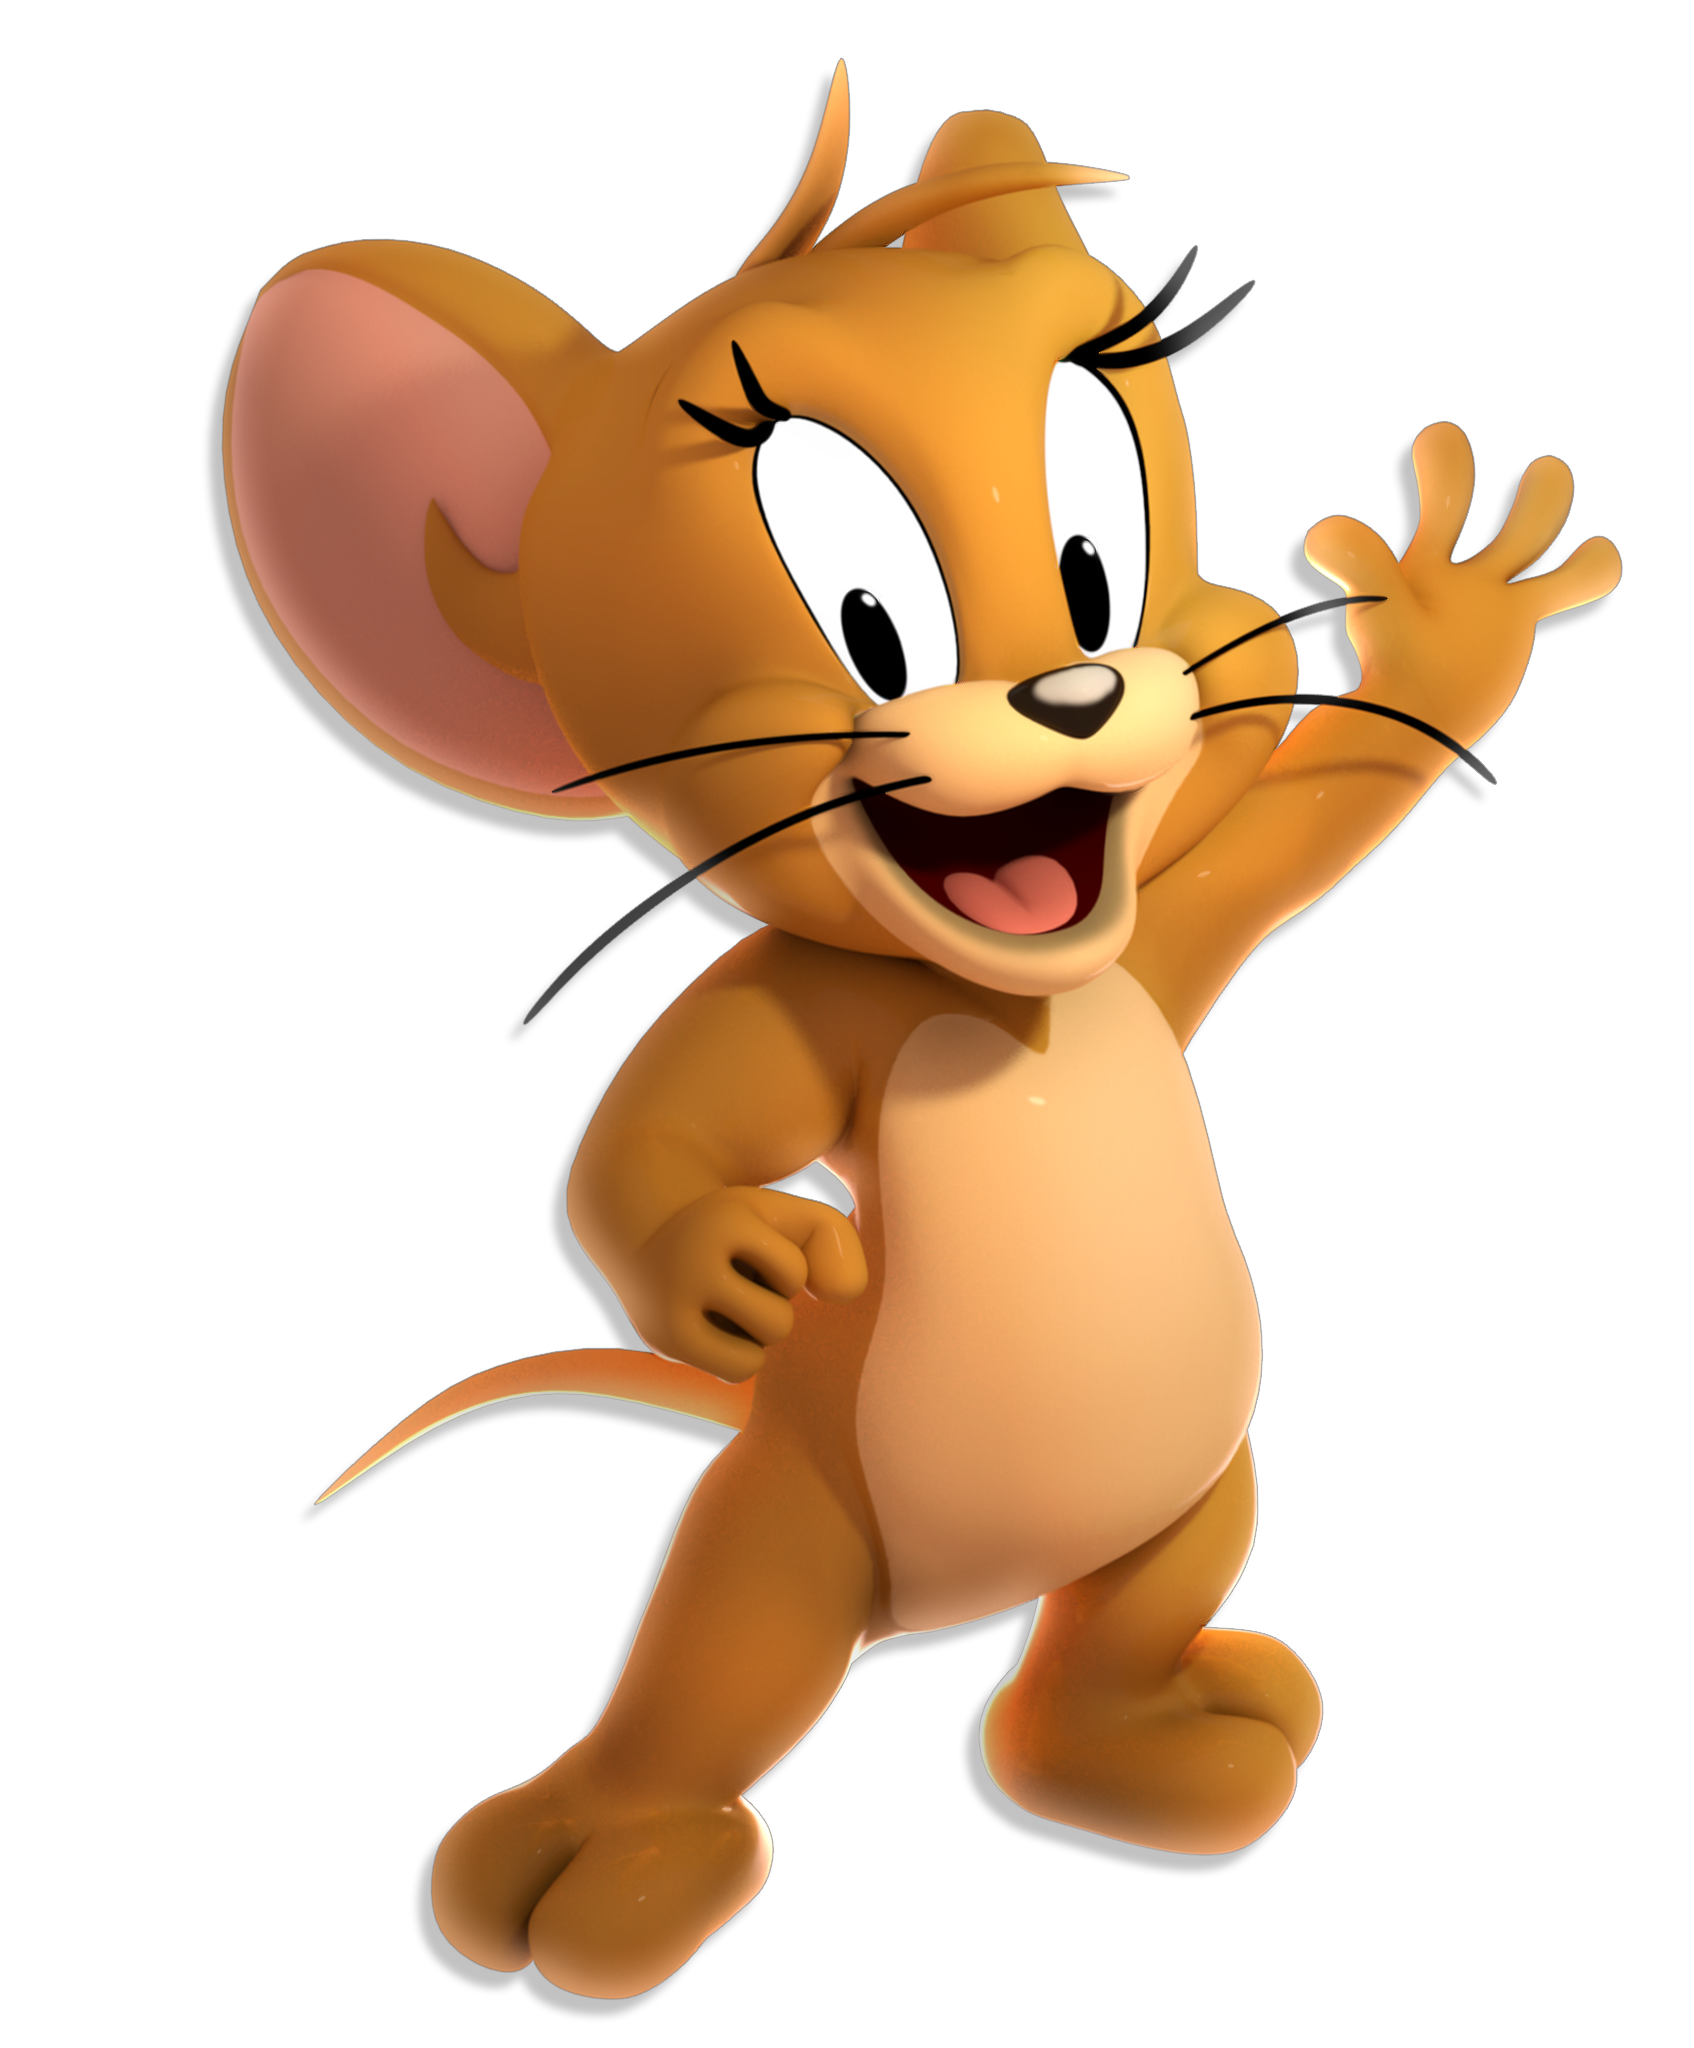 Tom and Jerry. Мышка Джерри. Мышонок Джерри из мультика. Том и Джерри мышонок Джерри. Три джерри